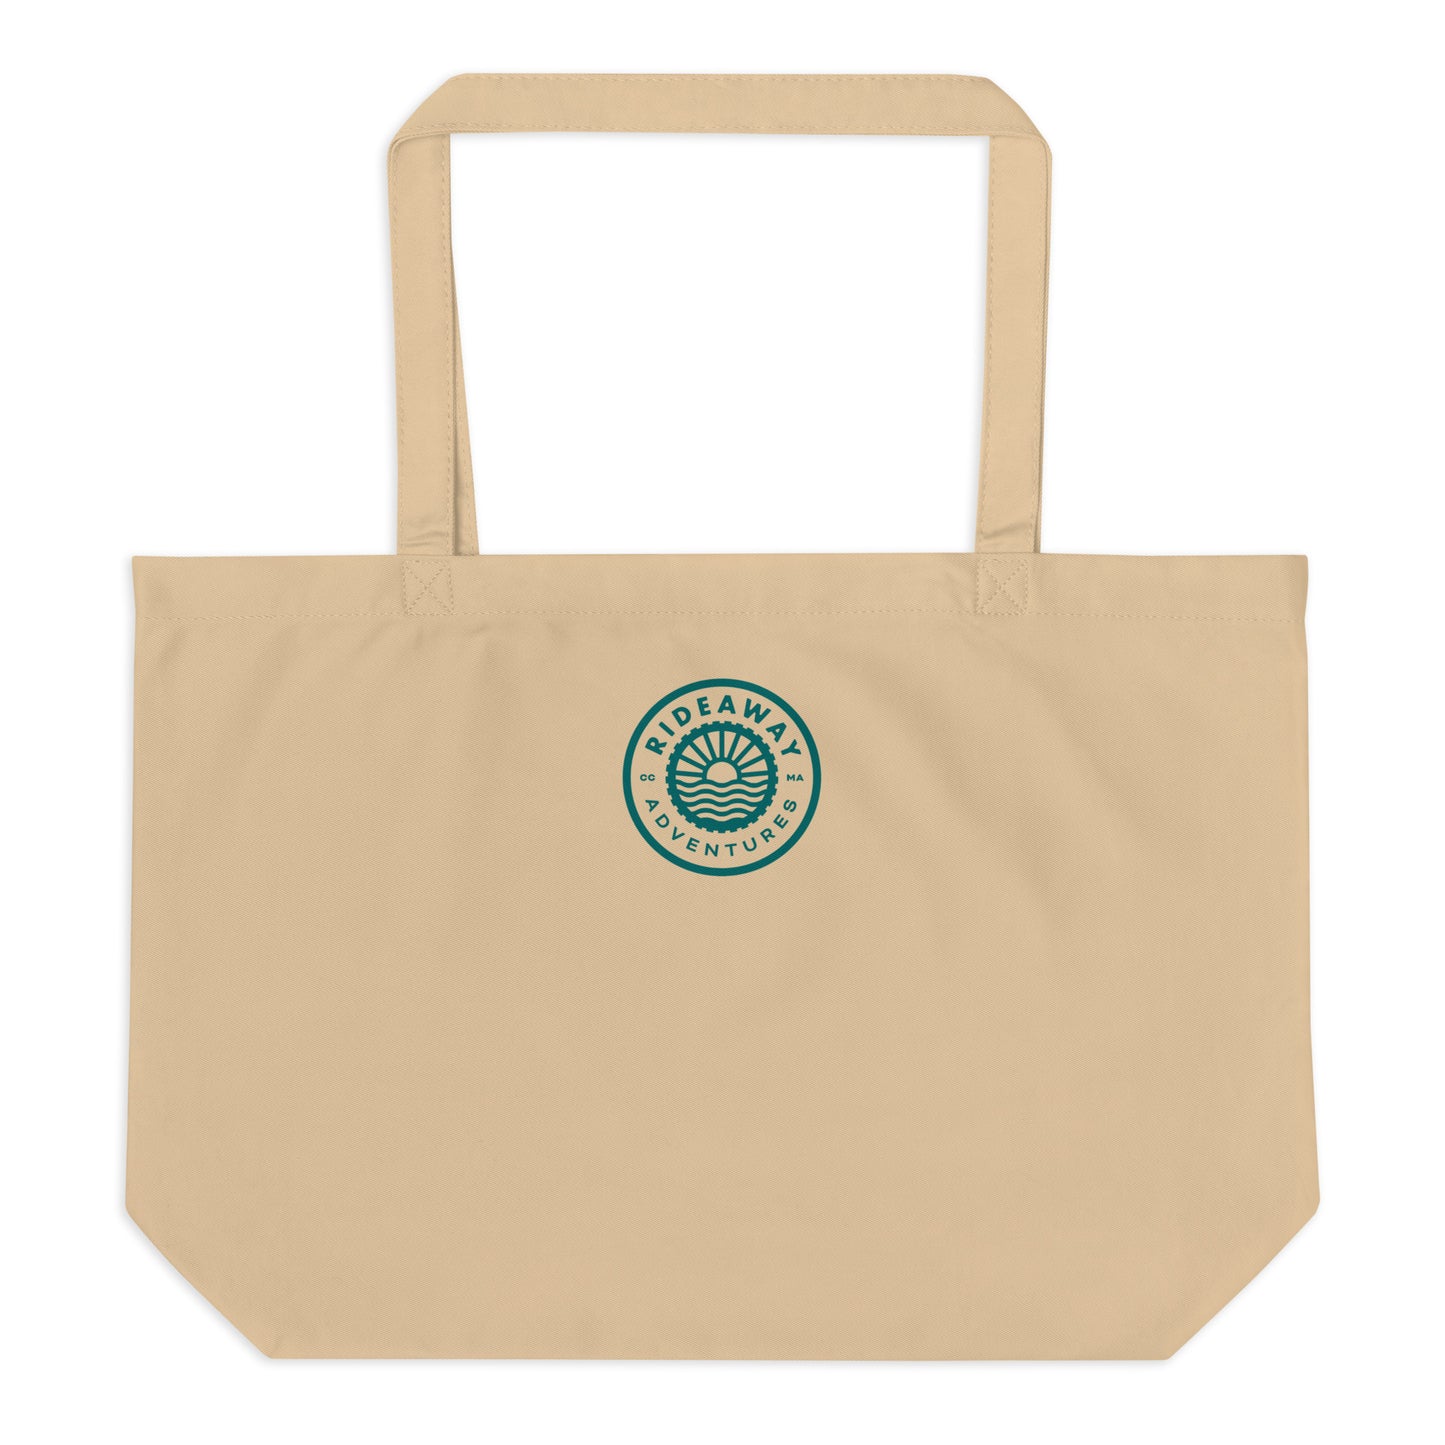 Waves - Large organic tote bag